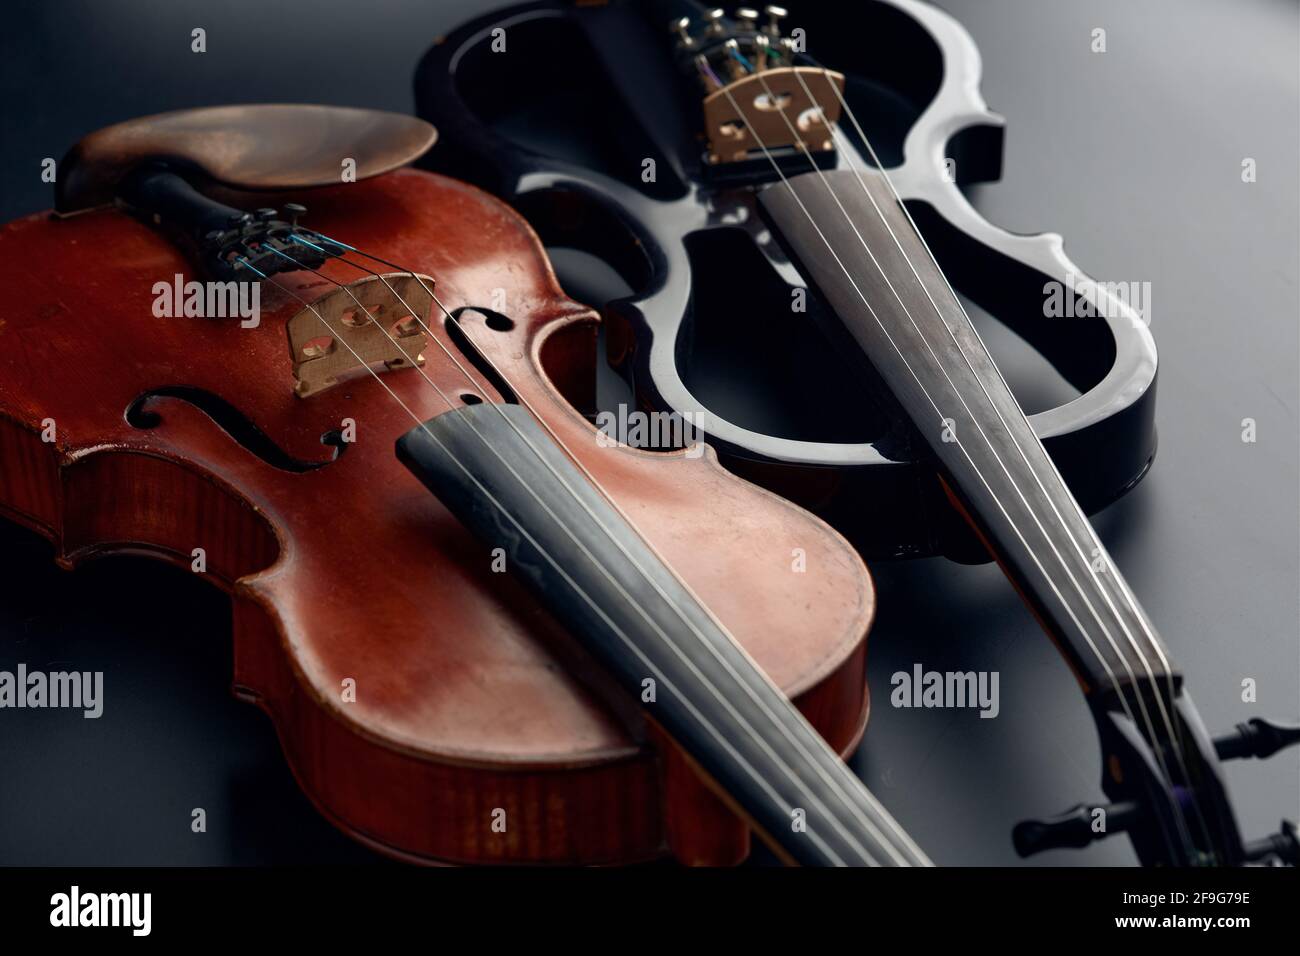 Violino elettrico immagini e fotografie stock ad alta risoluzione - Alamy